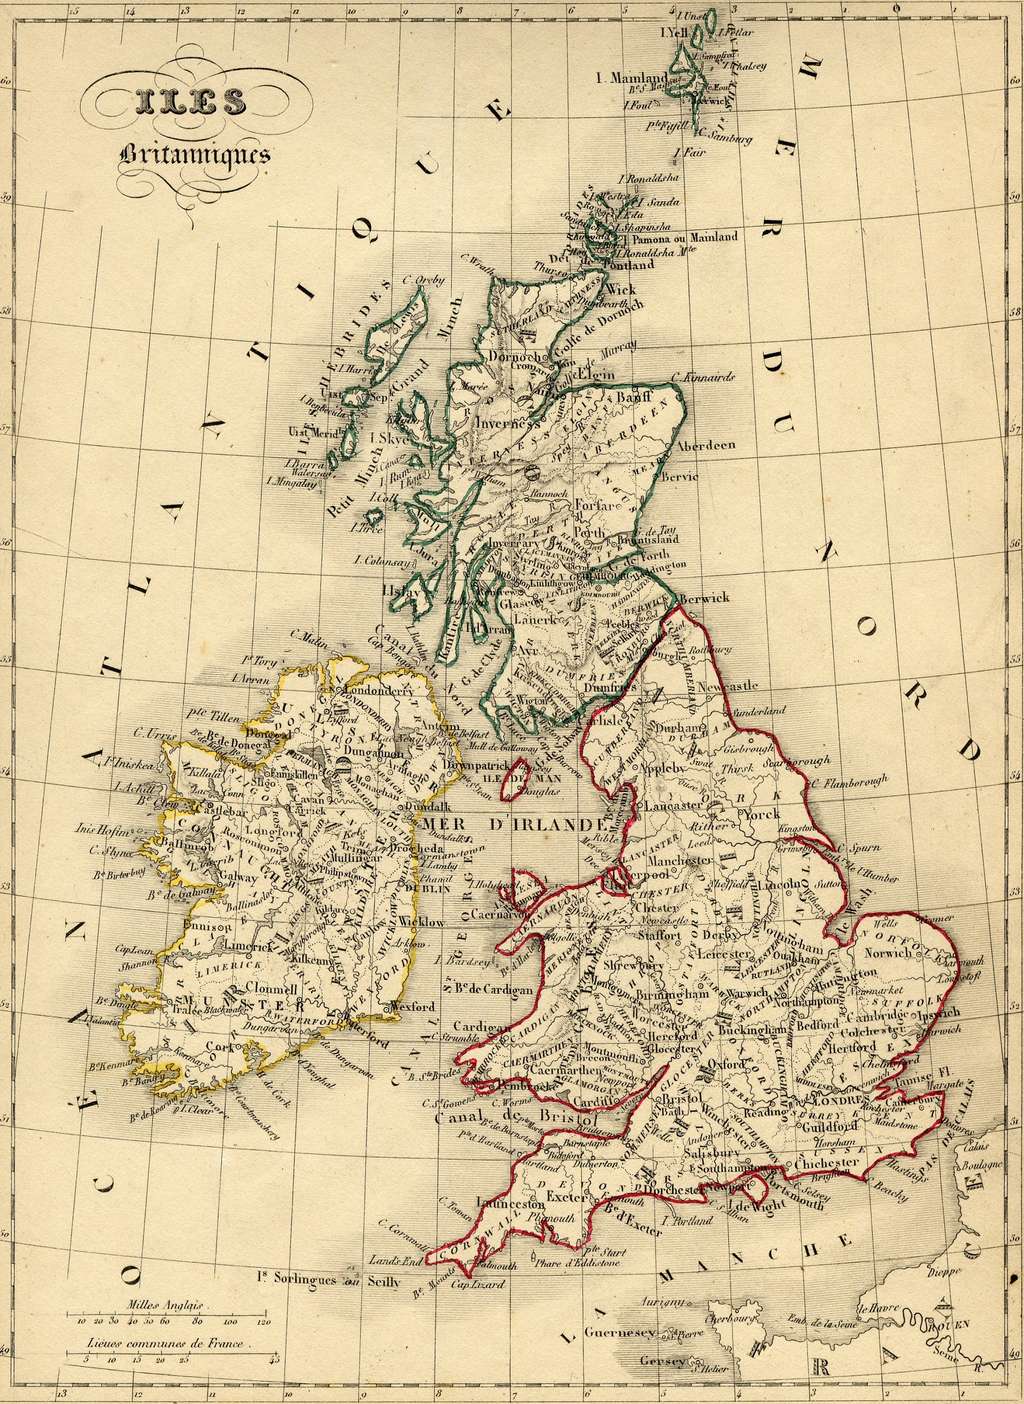 Carte des Iles Britanniques en 1843, par le géographe Alexandre Vuillemin, dans son "<em>Atlas universel de géographie ancienne et moderne...</em>". © Wikimedia Commons, domaine public.